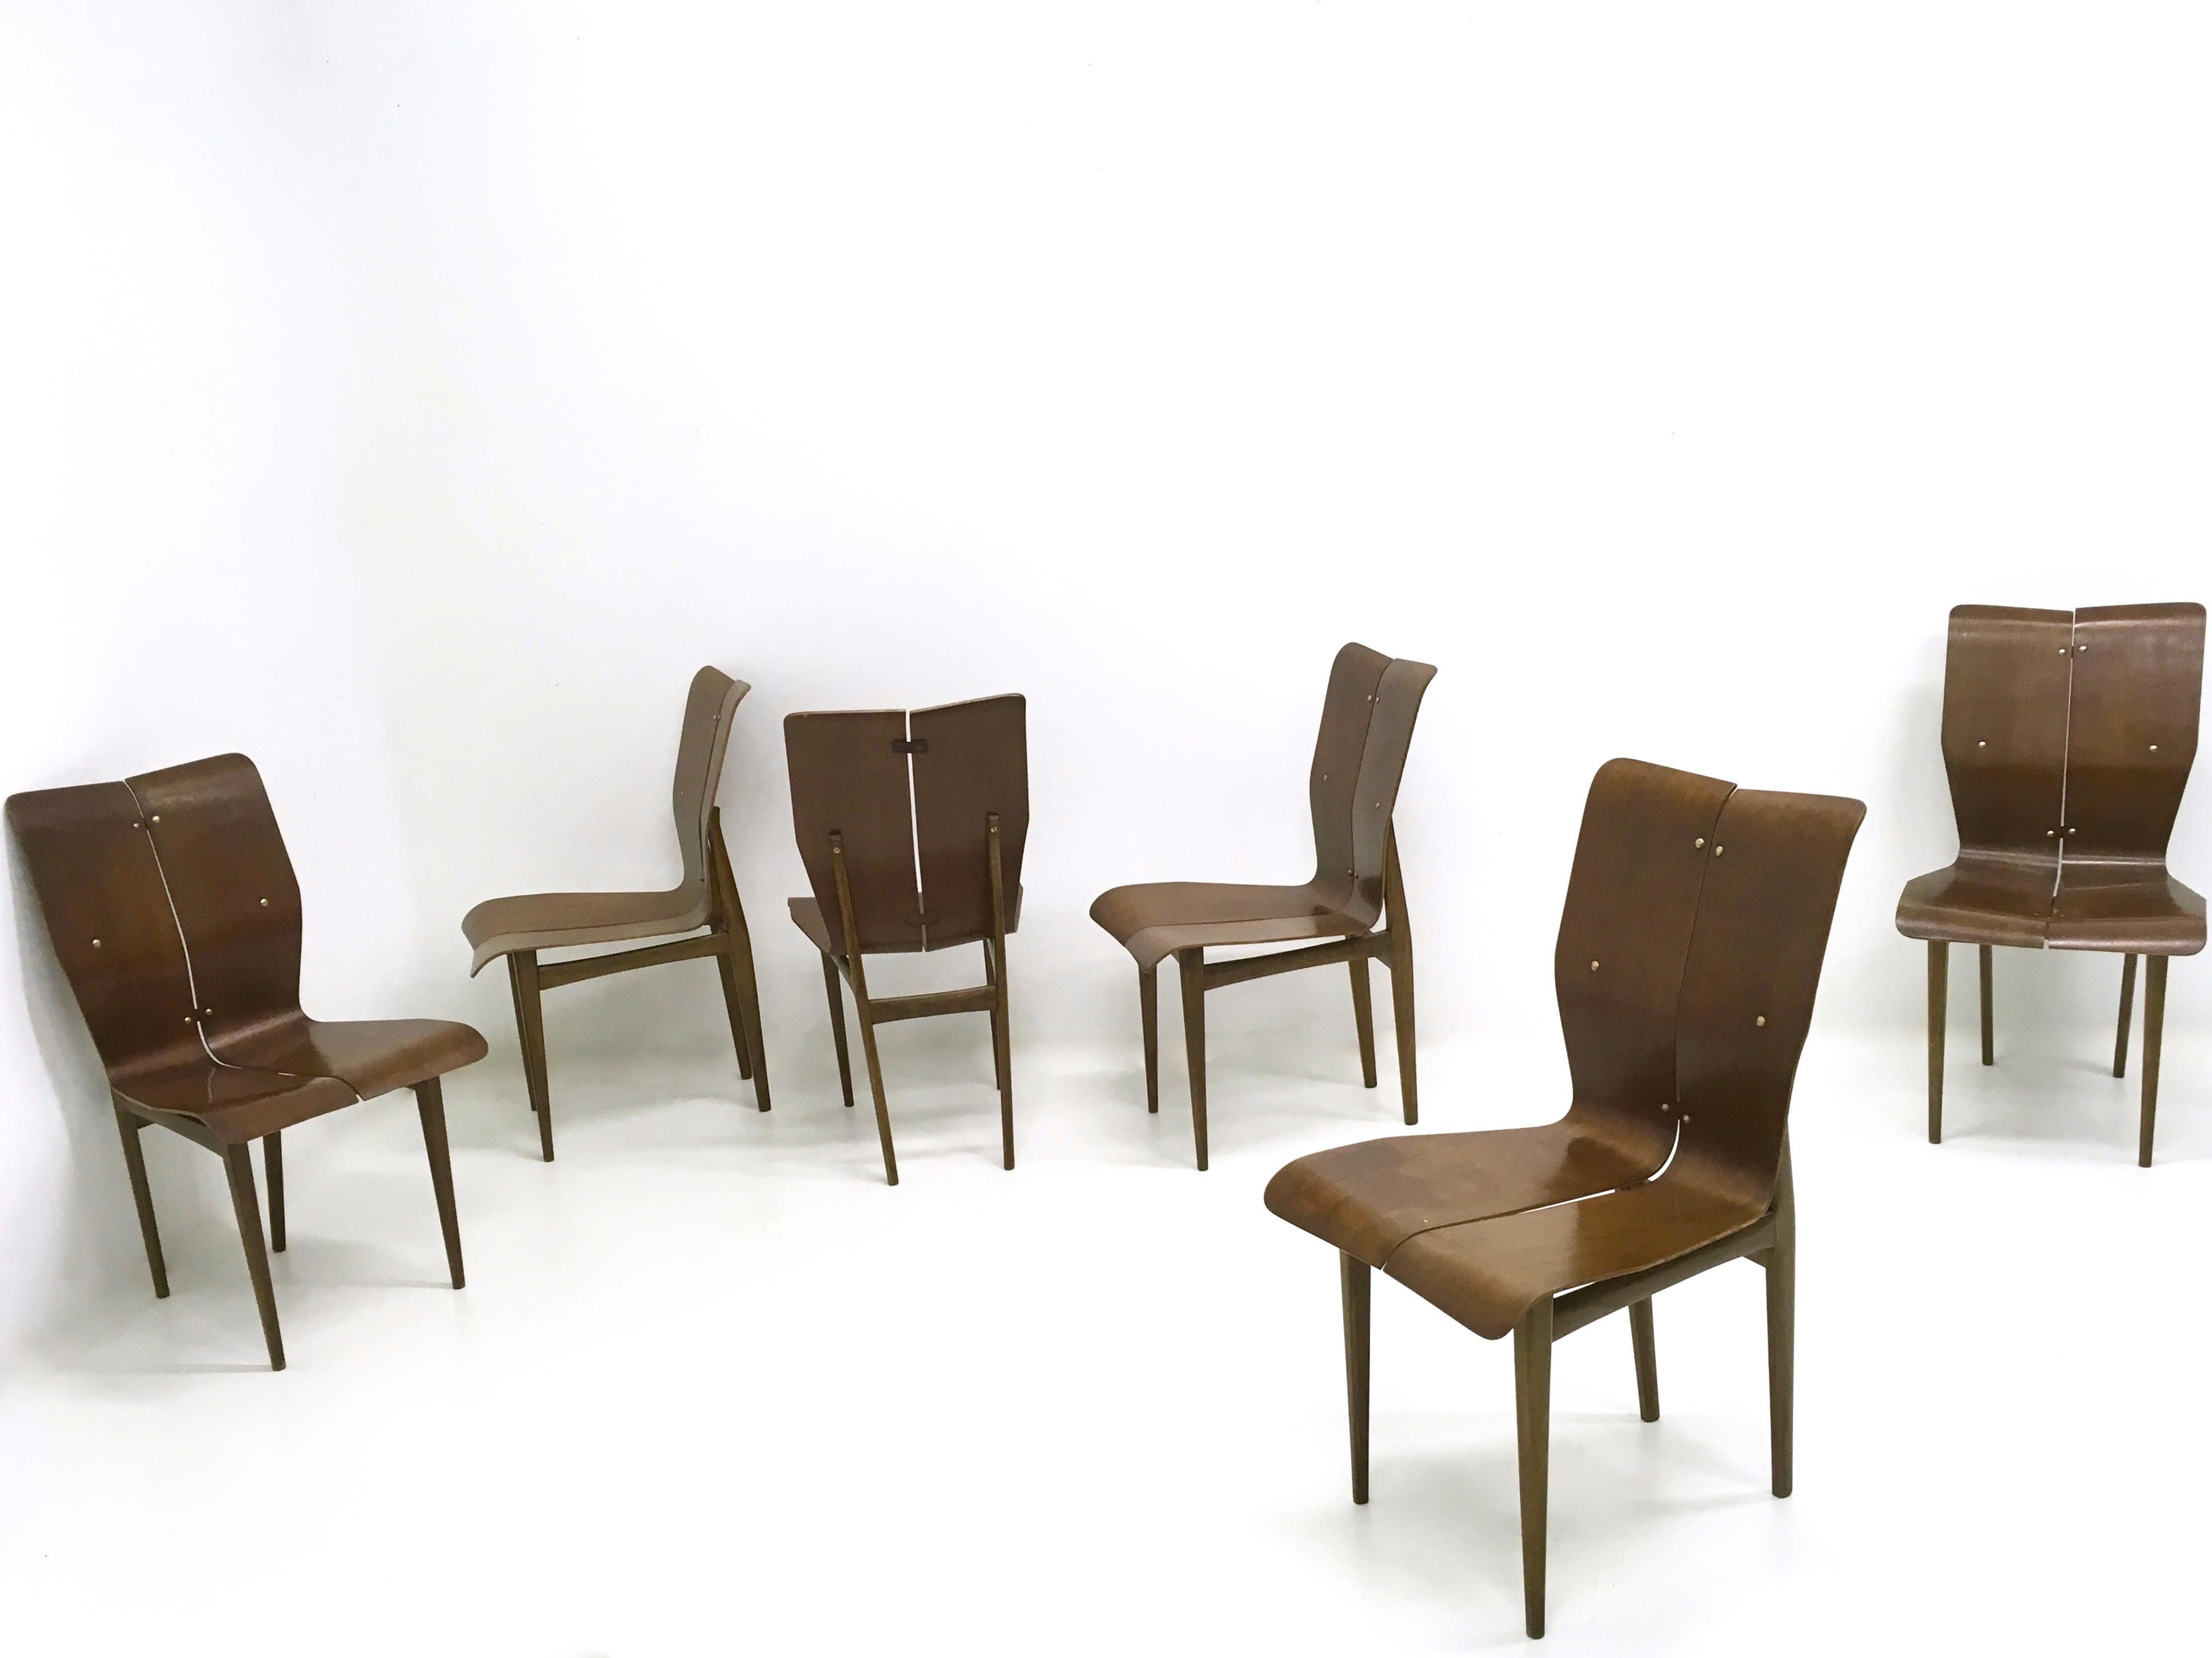 Fabriqué en Finlande, années 1950.
Ils sont dotés d'une assise et de pieds en bois incurvés et de détails en laiton, 
Ces chaises sont vintage, elles peuvent donc présenter de légères traces d'utilisation, mais elles peuvent être considérées comme